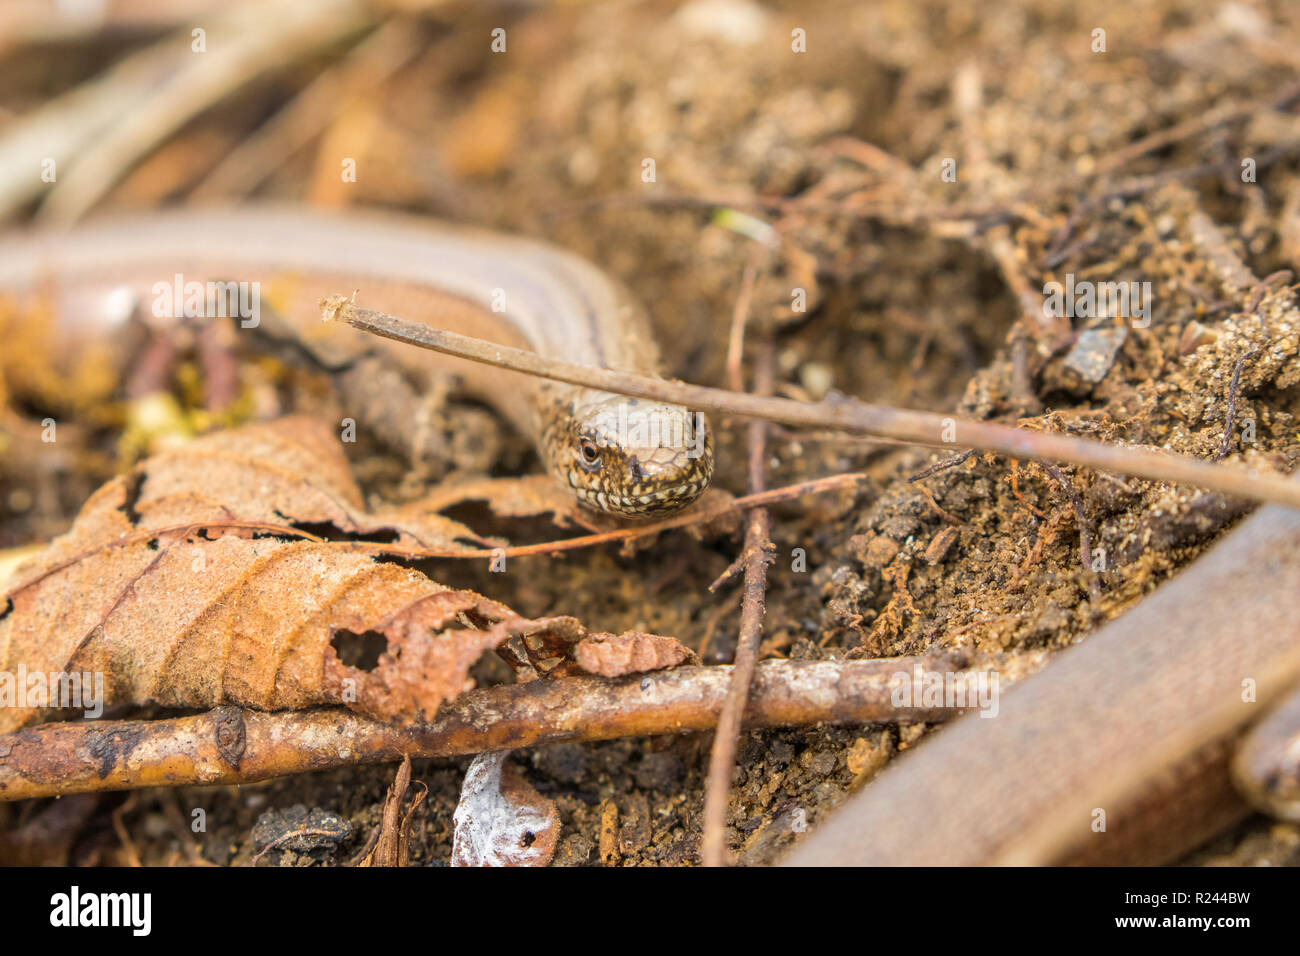 2 Slow Worms (Anguis fragilis) Legless Lizard Stock Photo